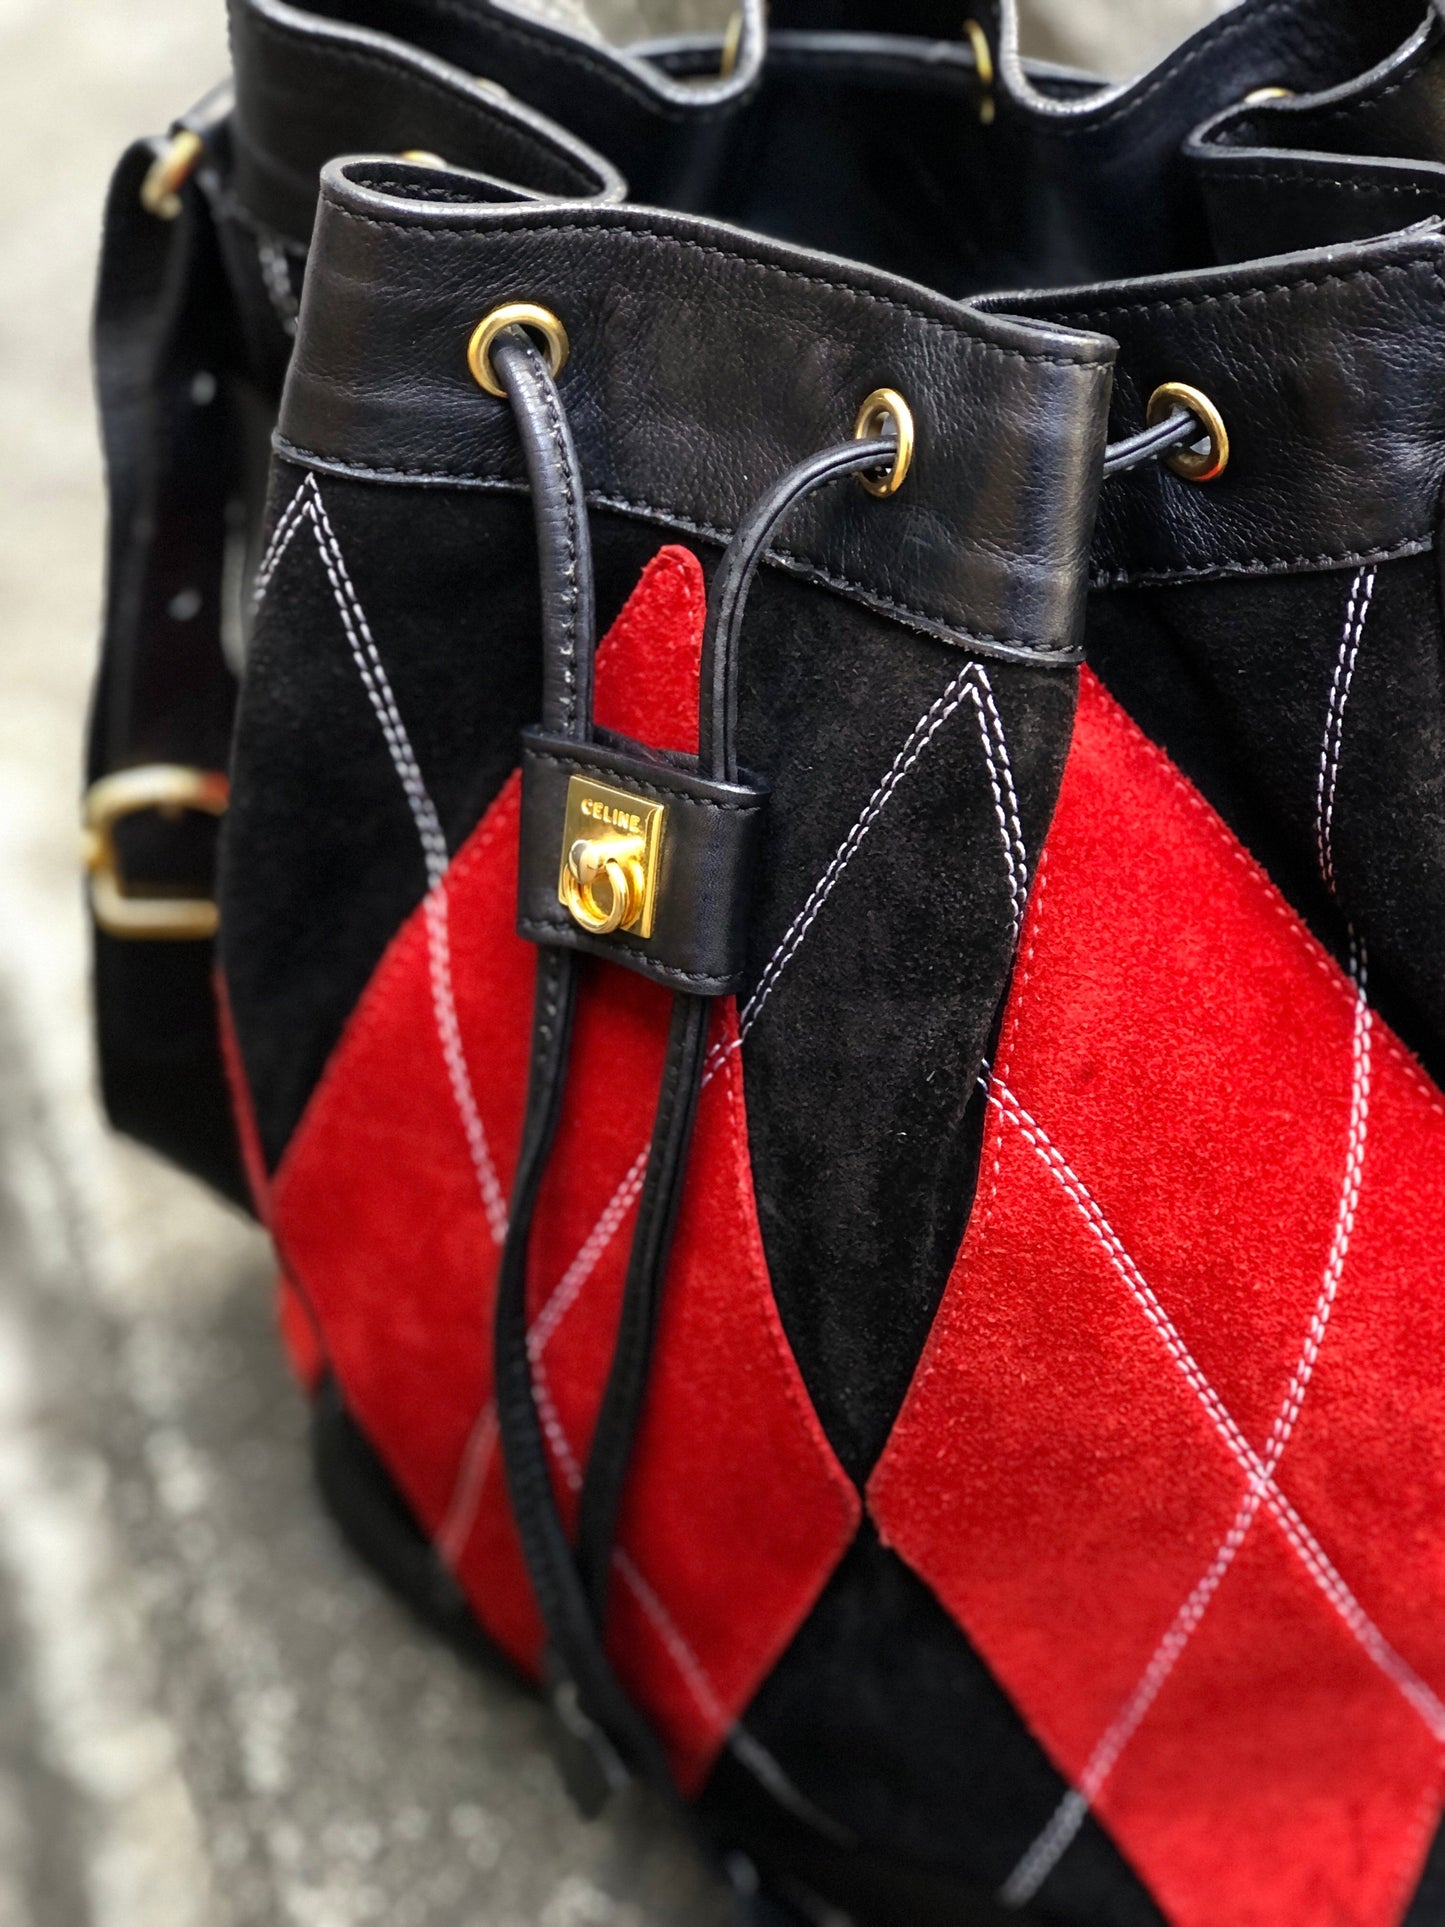 CELINE Argyle Mantel Drawstring Bag Bicolor Suede Leather Shoulder Bag Black Red Vintage Old Celine a764mf